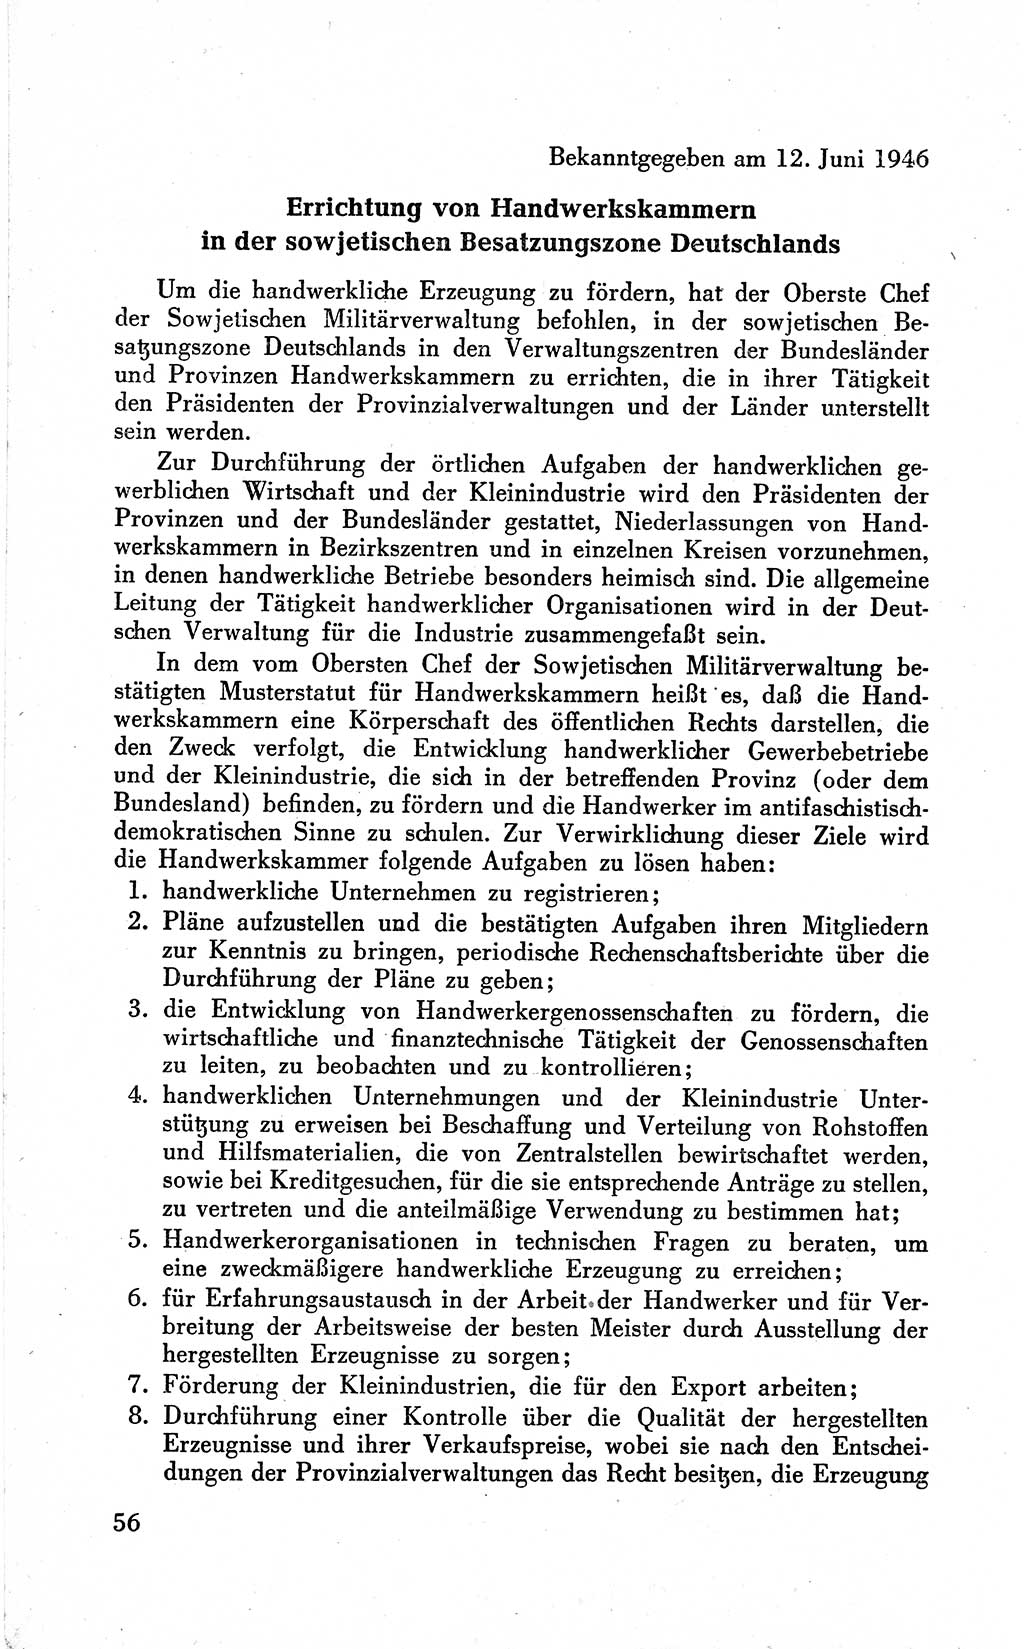 Befehle des Obersten Chefs der Sowjetischen Miltärverwaltung (SMV) in Deutschland - Aus dem Stab der Sowjetischen Militärverwaltung in Deutschland 1946 (Bef. SMV Dtl. 1946, S. 56)